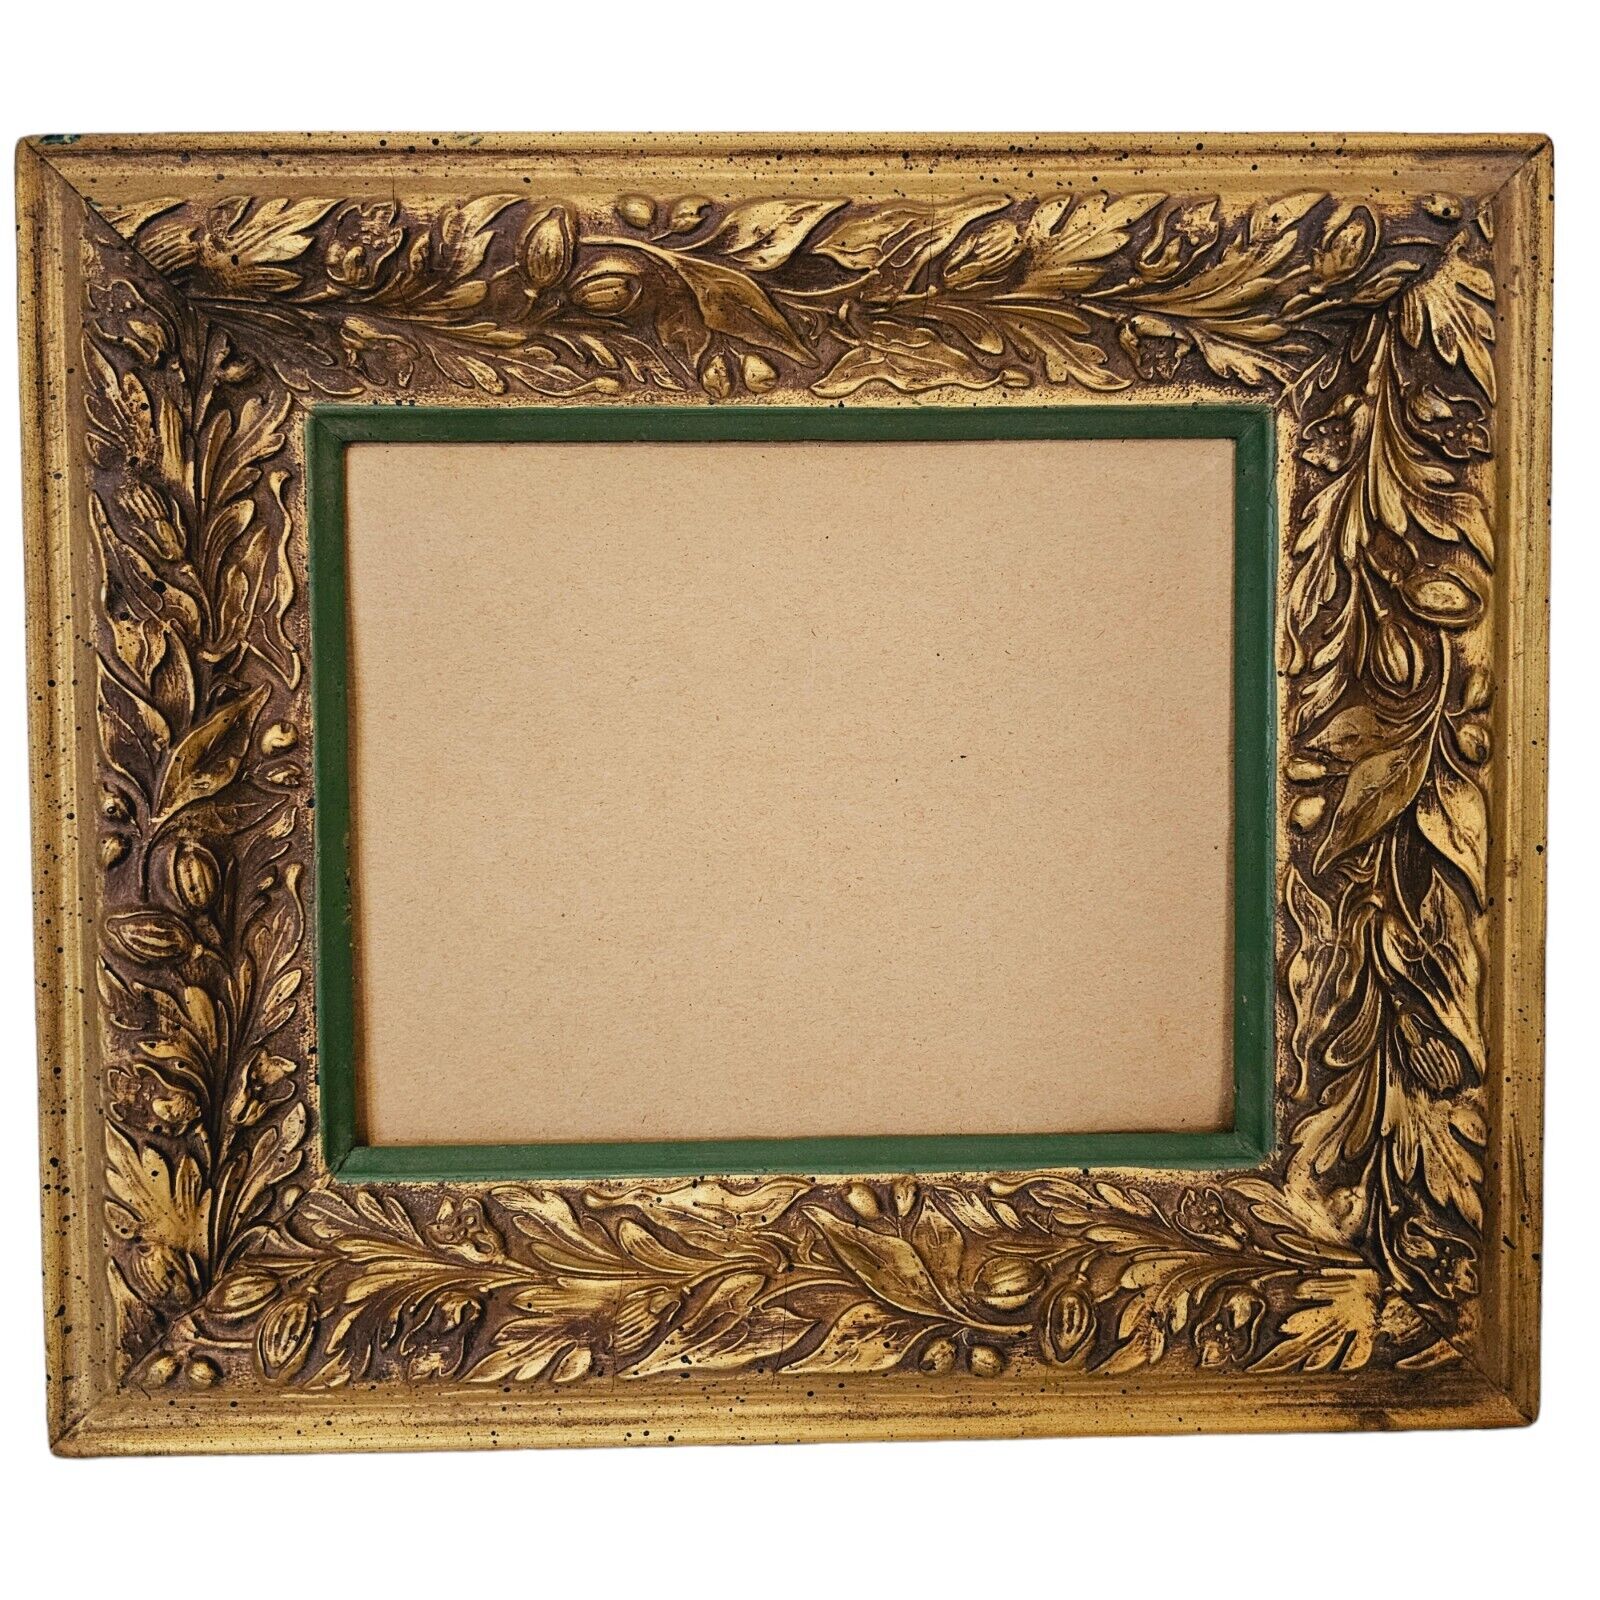 Vintage Ornate Gold Wooden Frame Fits 8